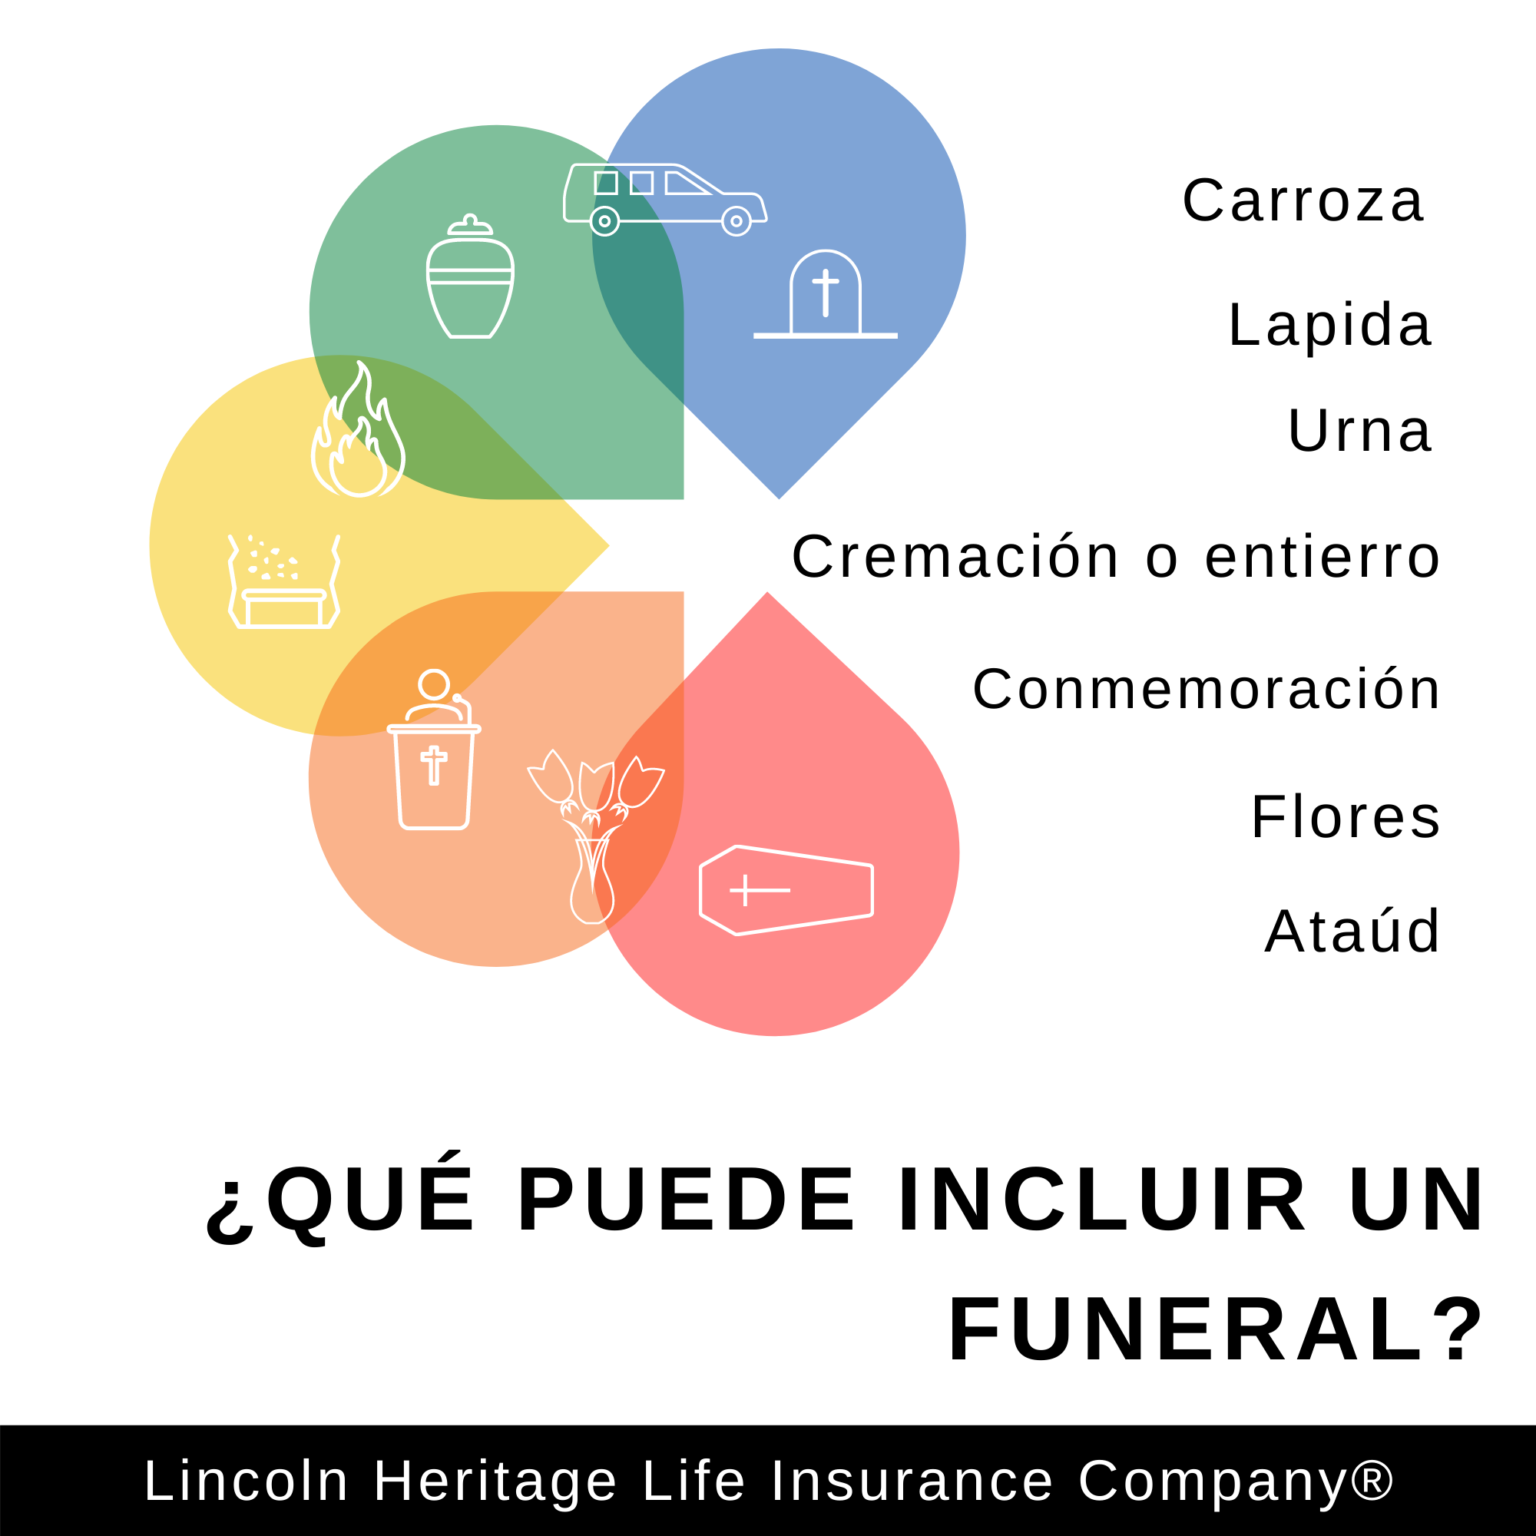 Servicio Funerario ¿Qué es y qué incluye?